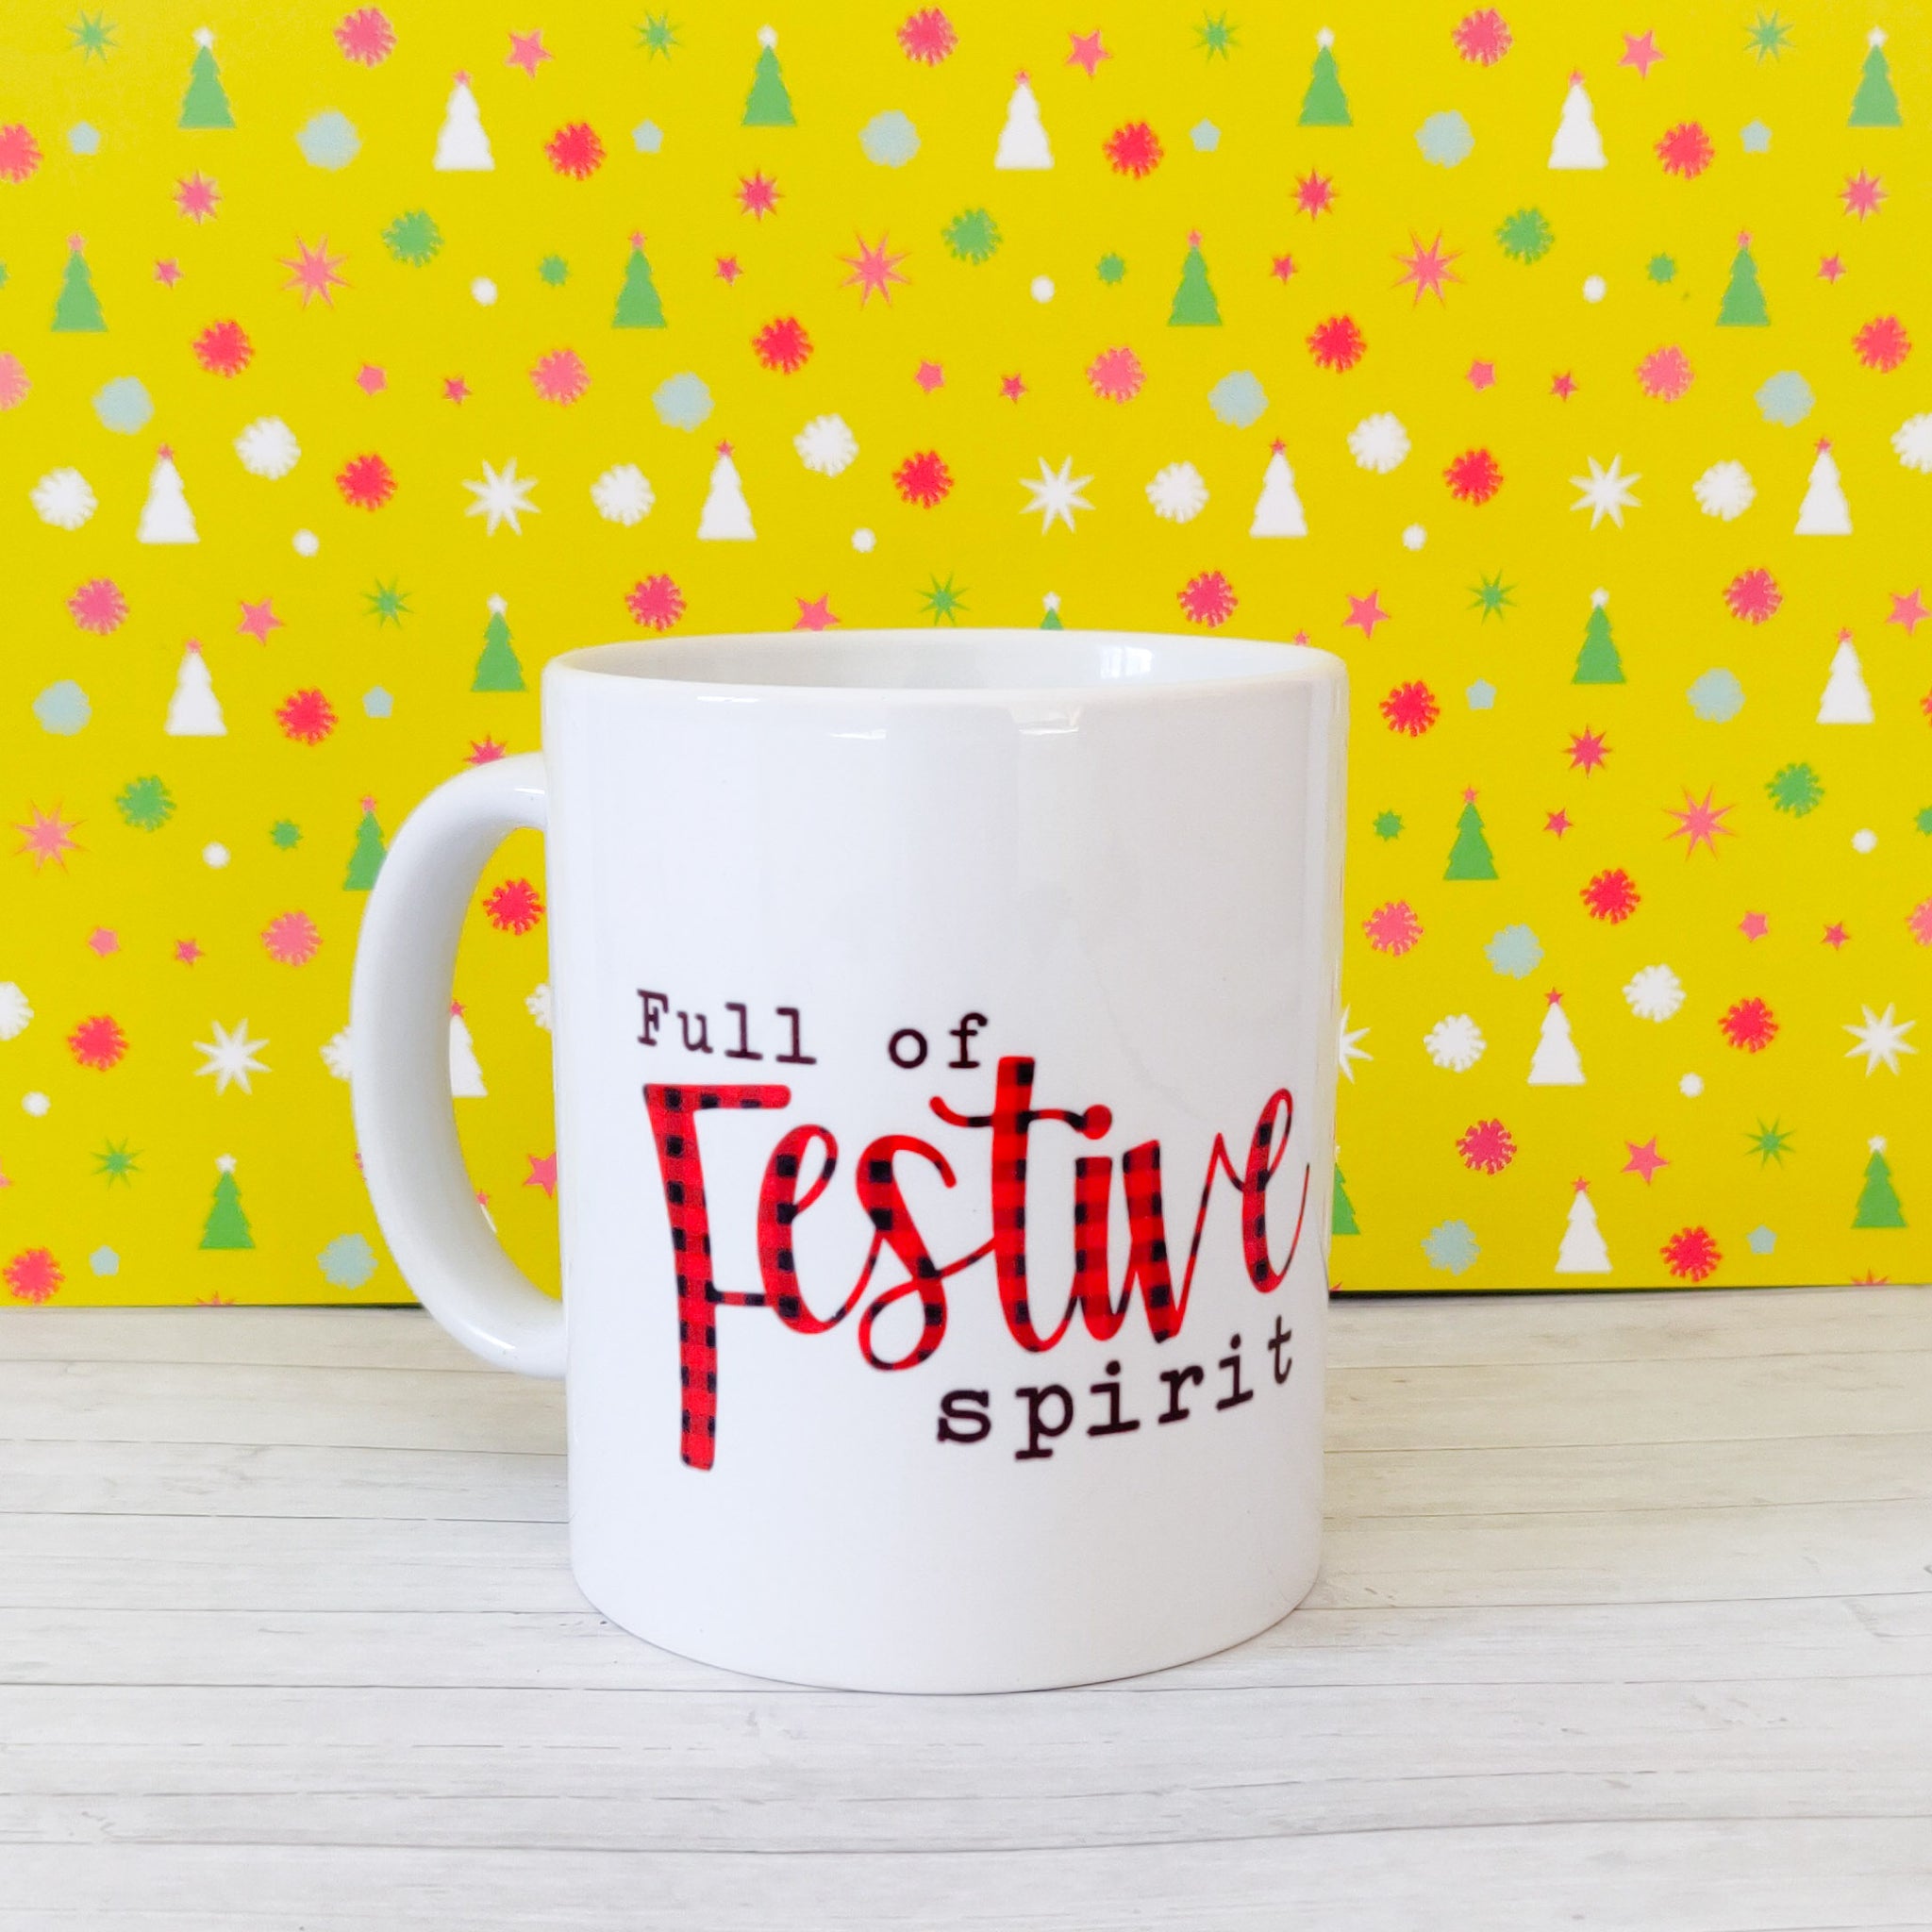 "Full of Festive Spirit" Ceramic Mug